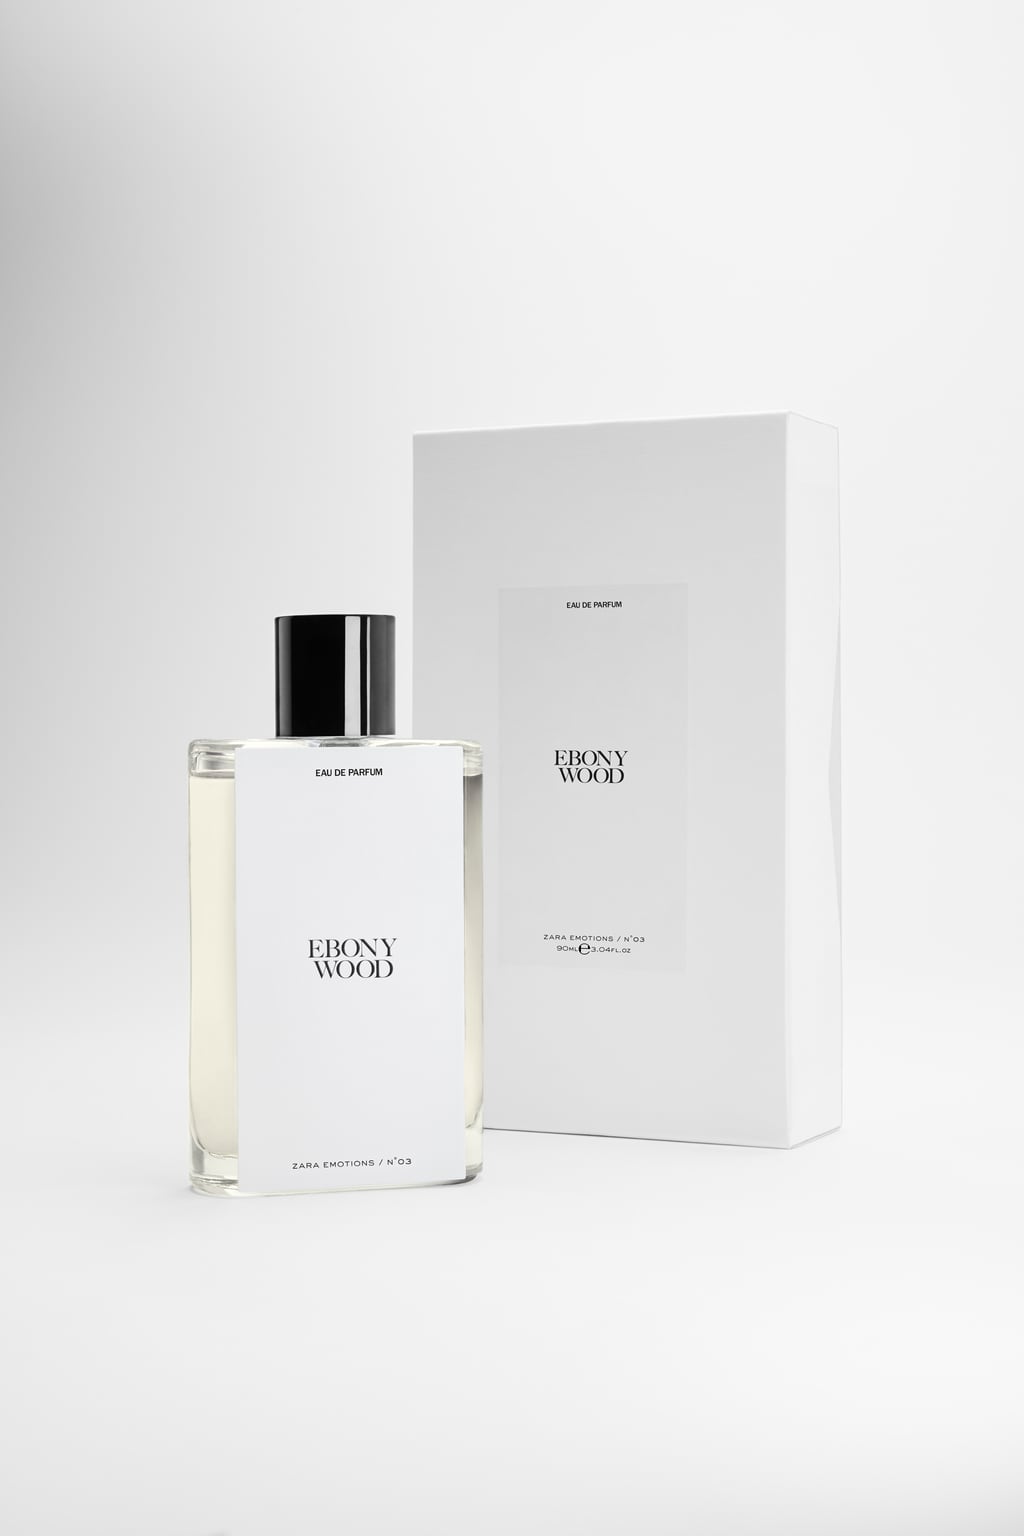 Ebony Wood Zara parfum - un nouveau parfum pour homme et femme 2019